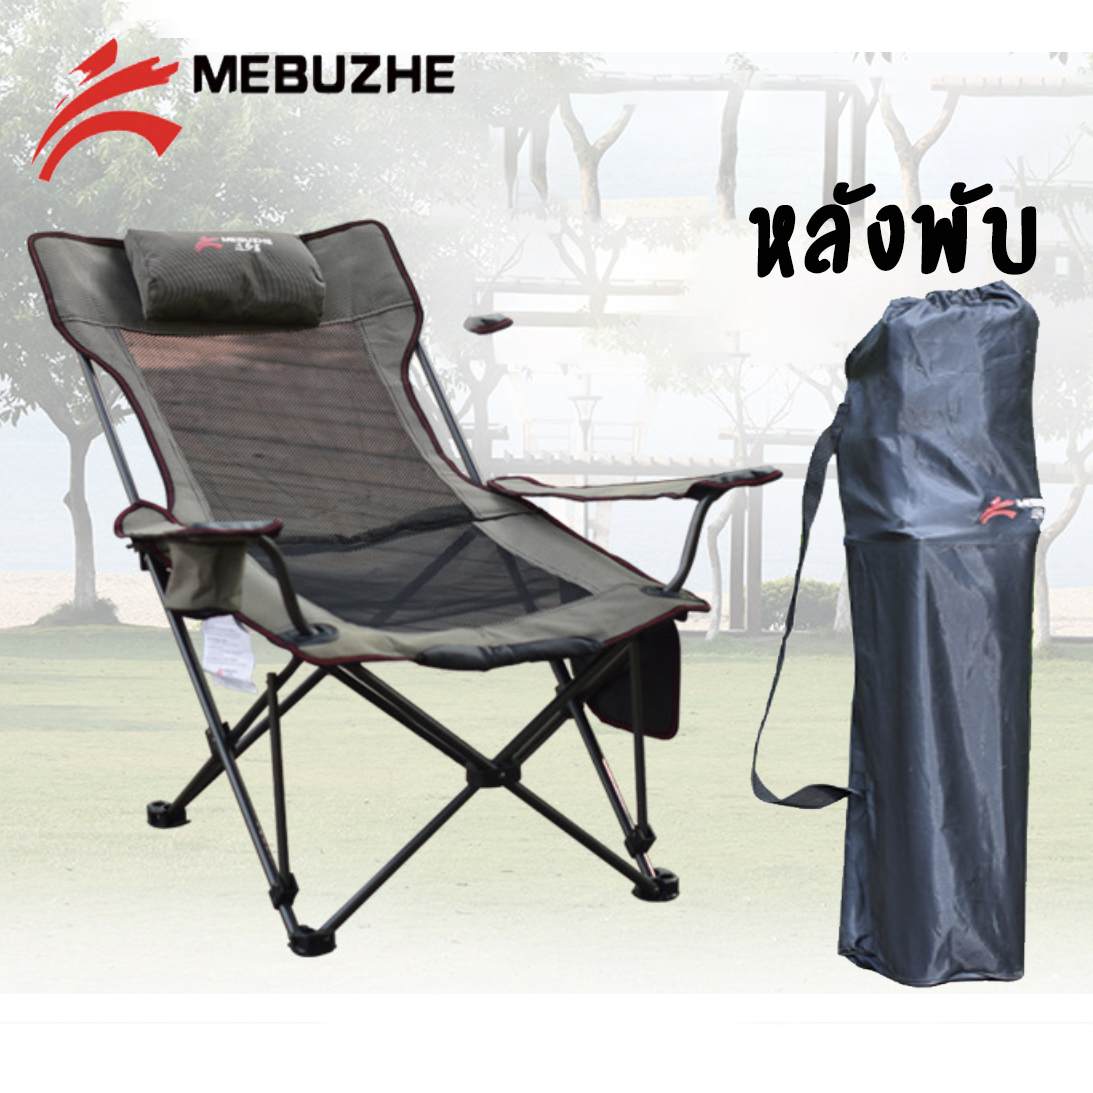 ของแท้ 100% MEBUZHE เก้าอี้สนาม ปรับนอนได้ รับน้ำหนัก 150 Kg [คนอ้วน 150 kg นั่ง ได้ ]